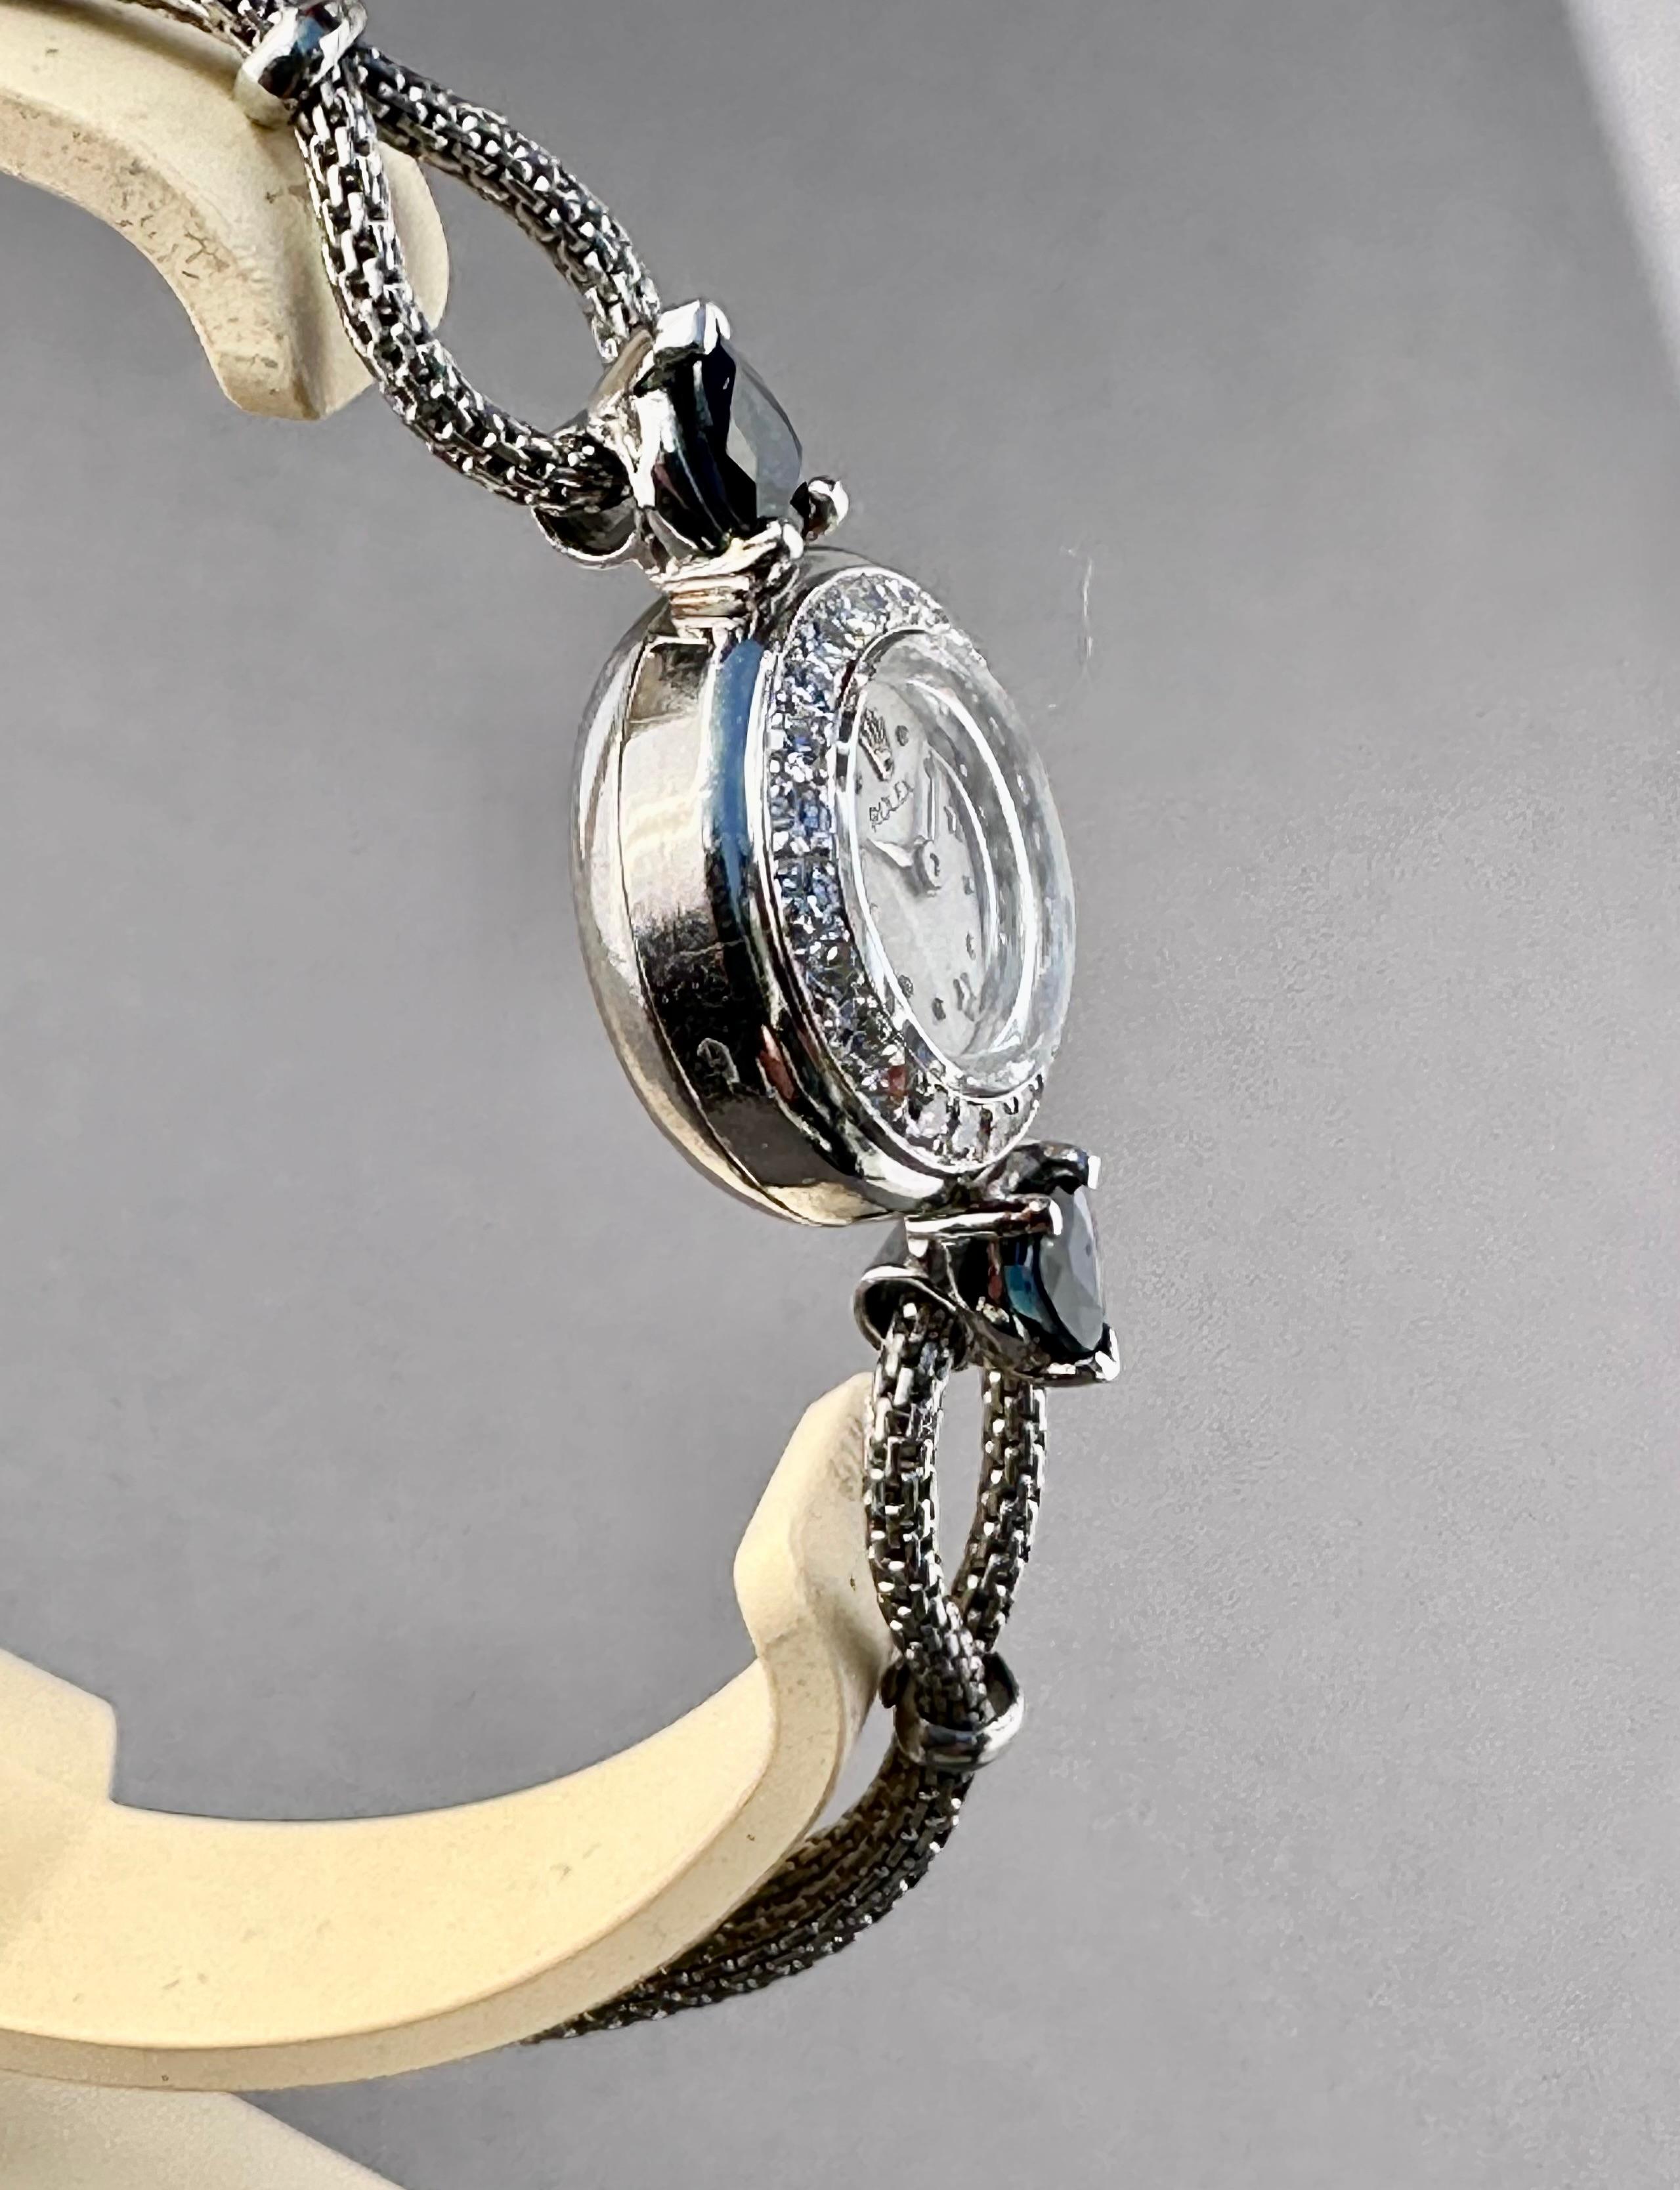 Rolex Precision Montre vintage pour femmes des années 1940 en platine avec cadran à étoiles extrêmement rare

Vintage Ladies Rolex Diamond & Platinum Watch - Mouvement mécanique. Boîtier en platine avec lunette en diamant (16 mm). Cadran